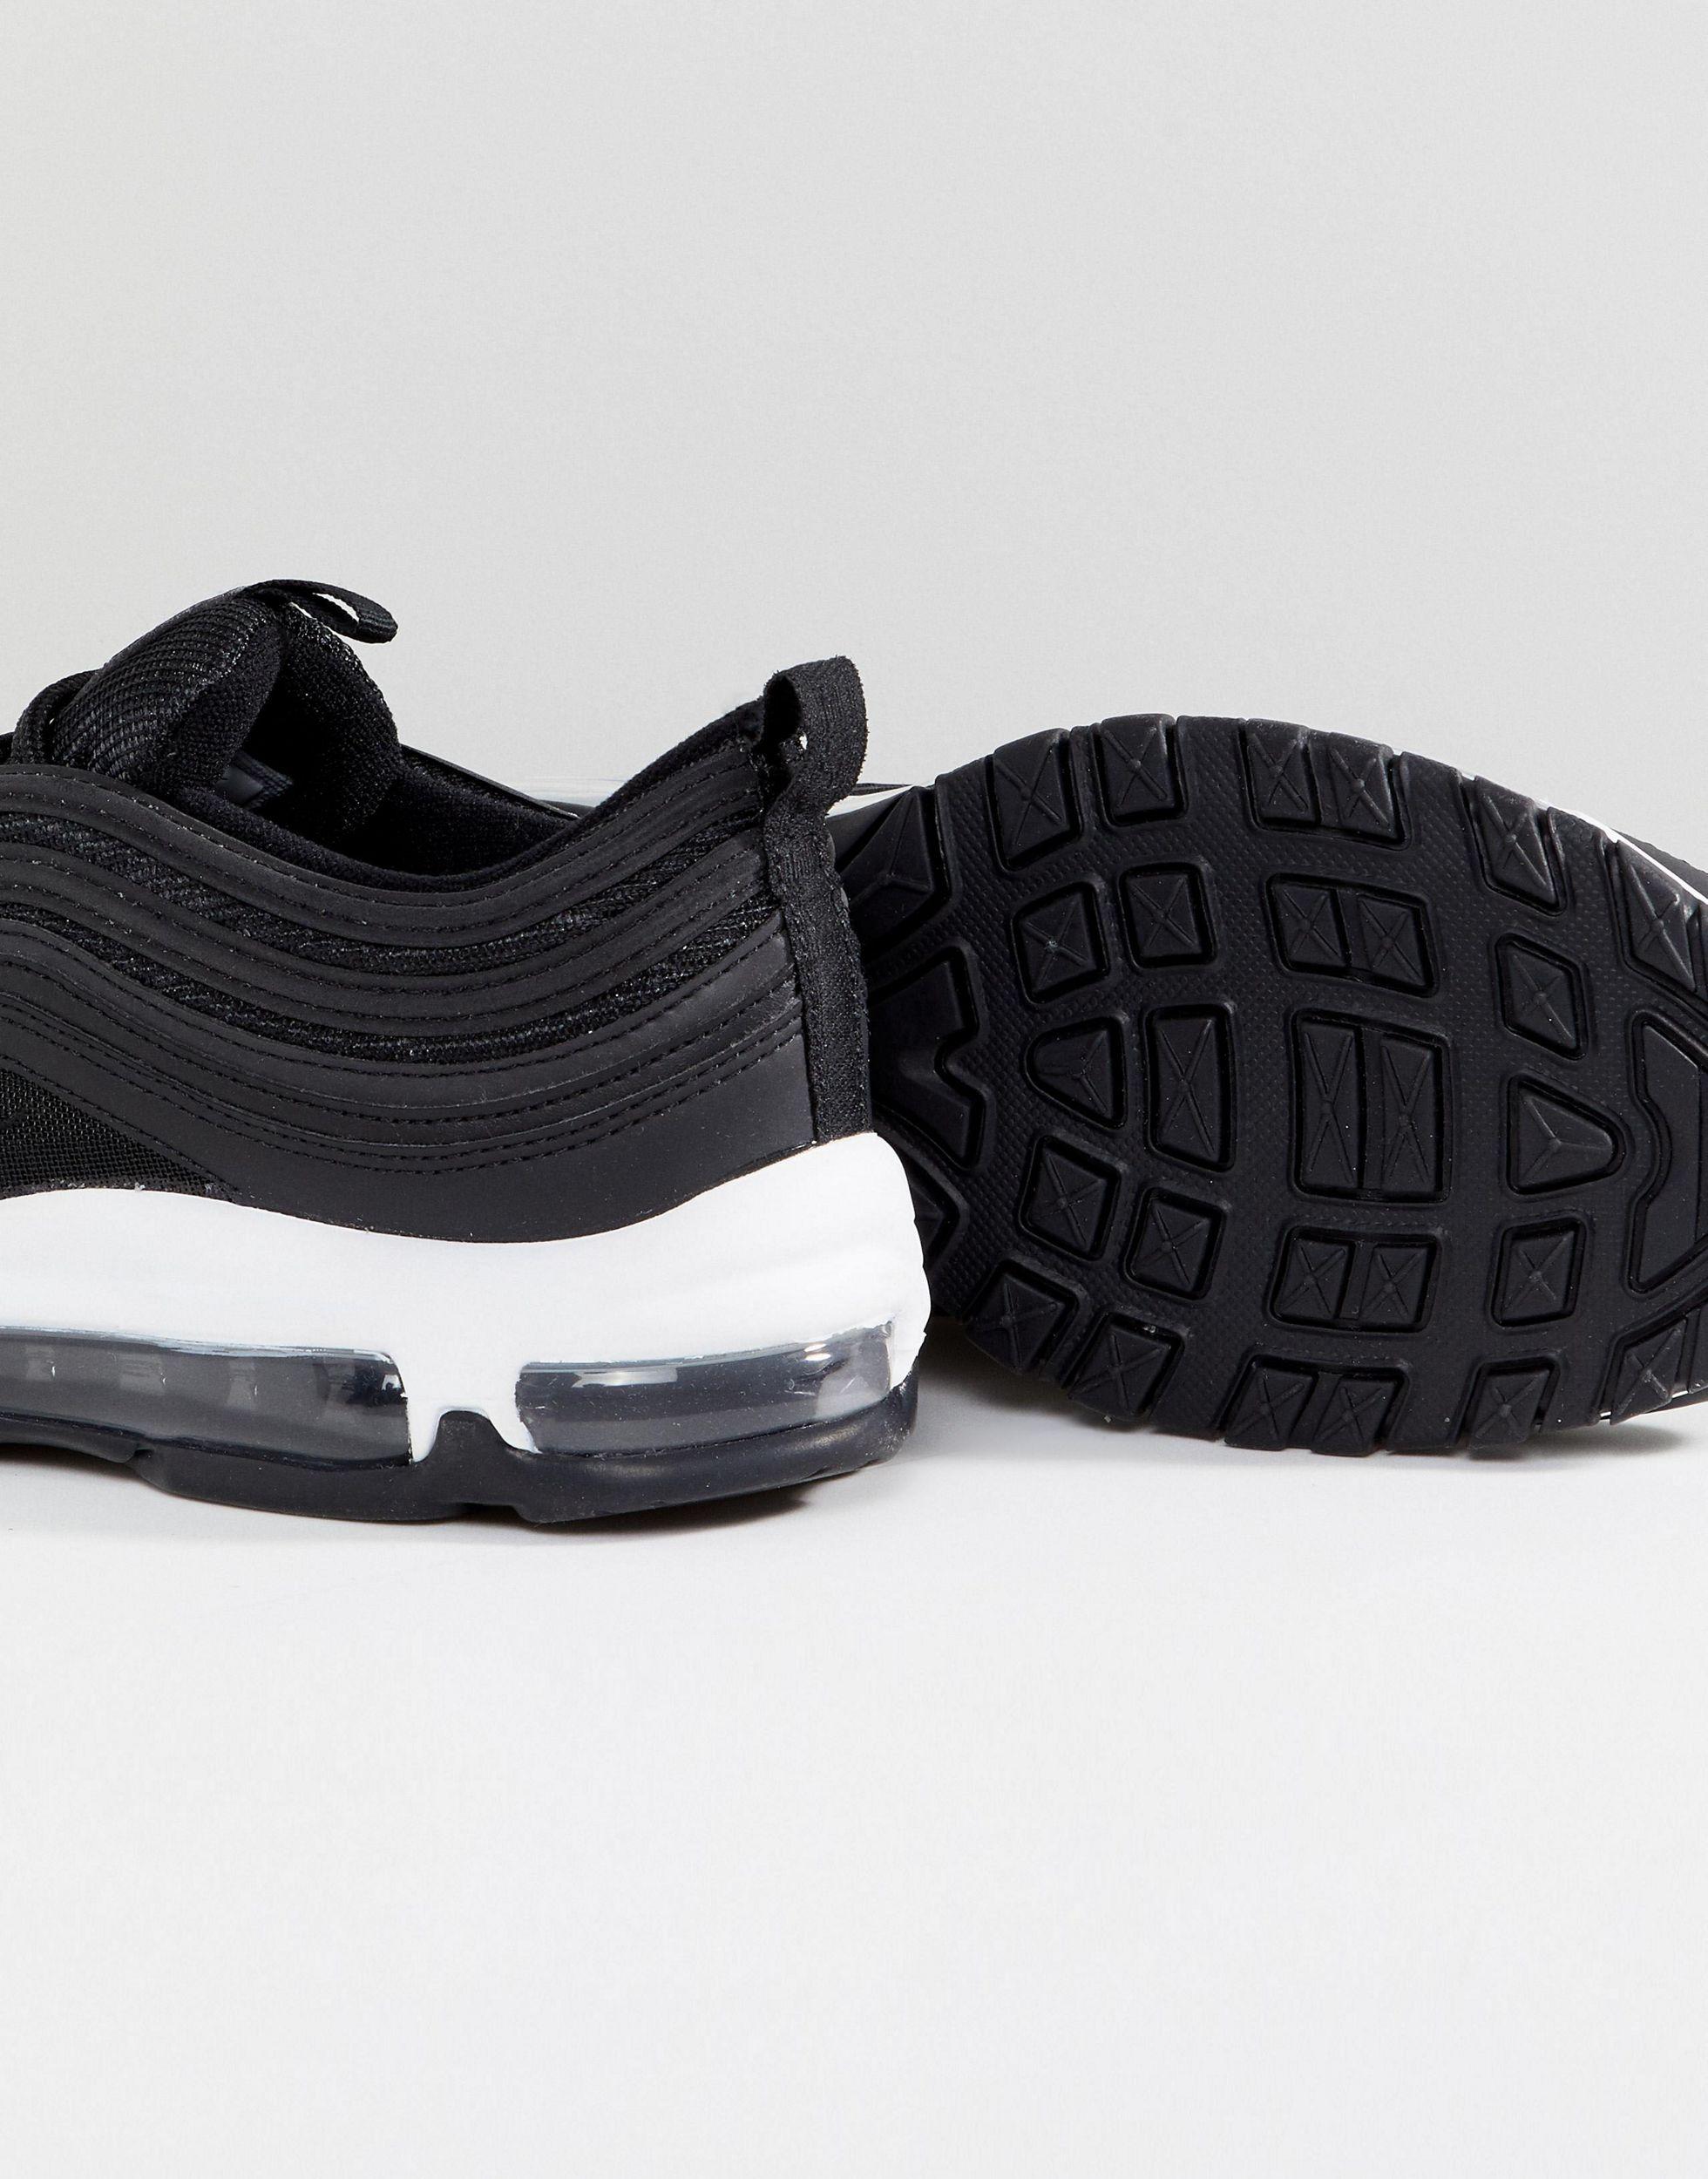 Zapatillas negras y blancas Air Max 97 Nike de color Negro | Lyst